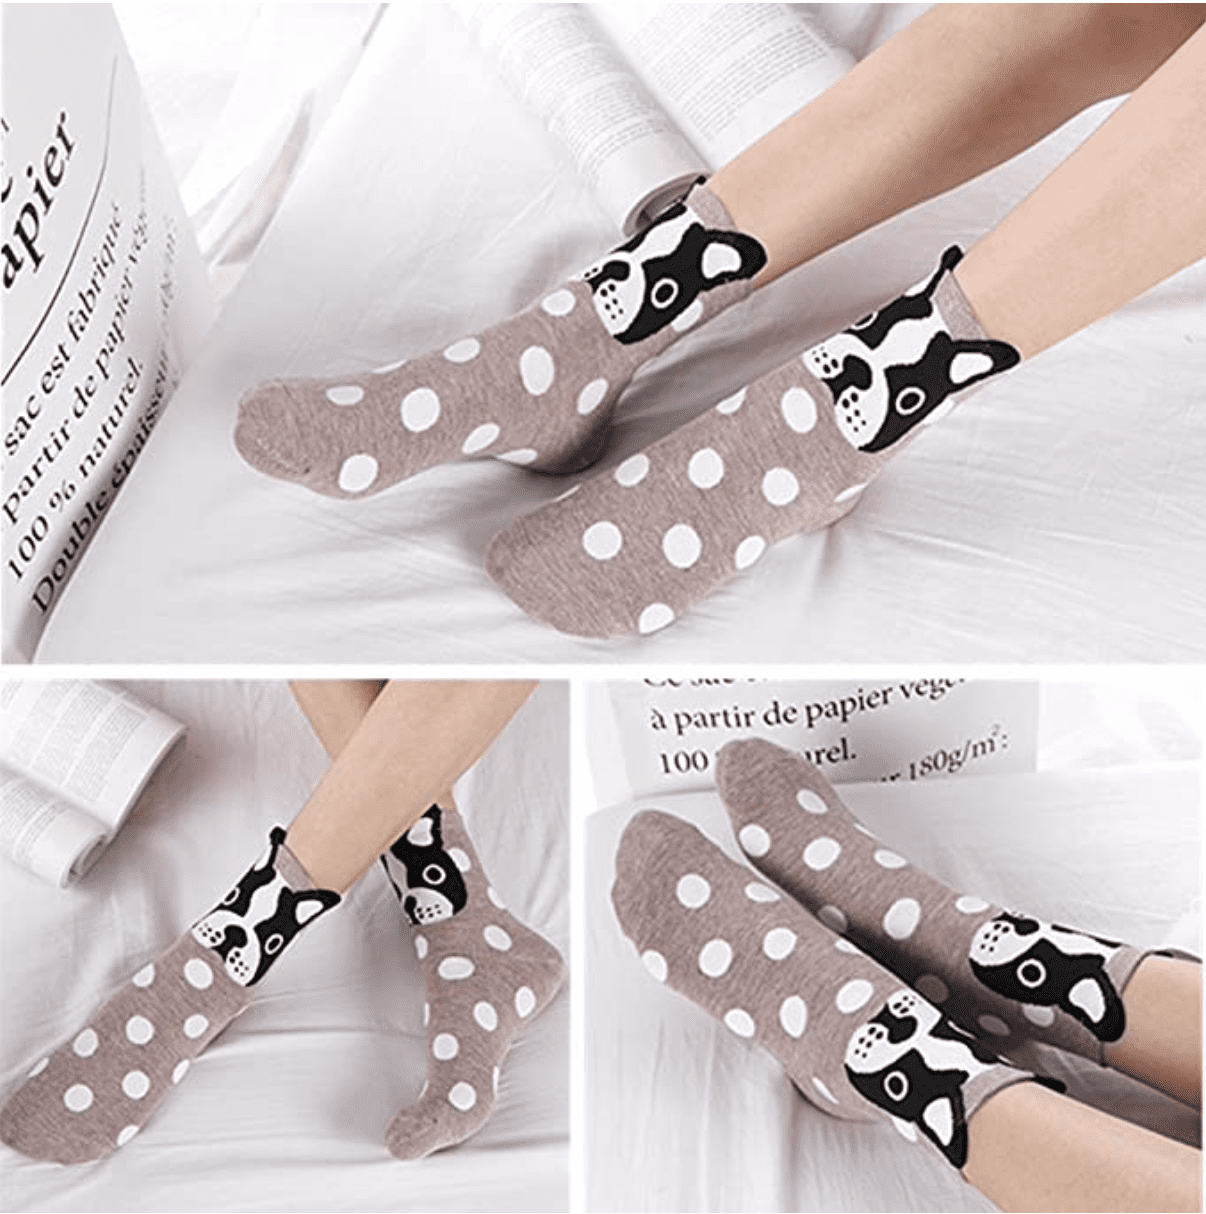 Calcetines para mujer, con diseños de gatitos, calcetines de algodón,  calcetines largos divertidos para mujer, lindos calcetines con diseño de  caricatura, 5 pares – VastaGo